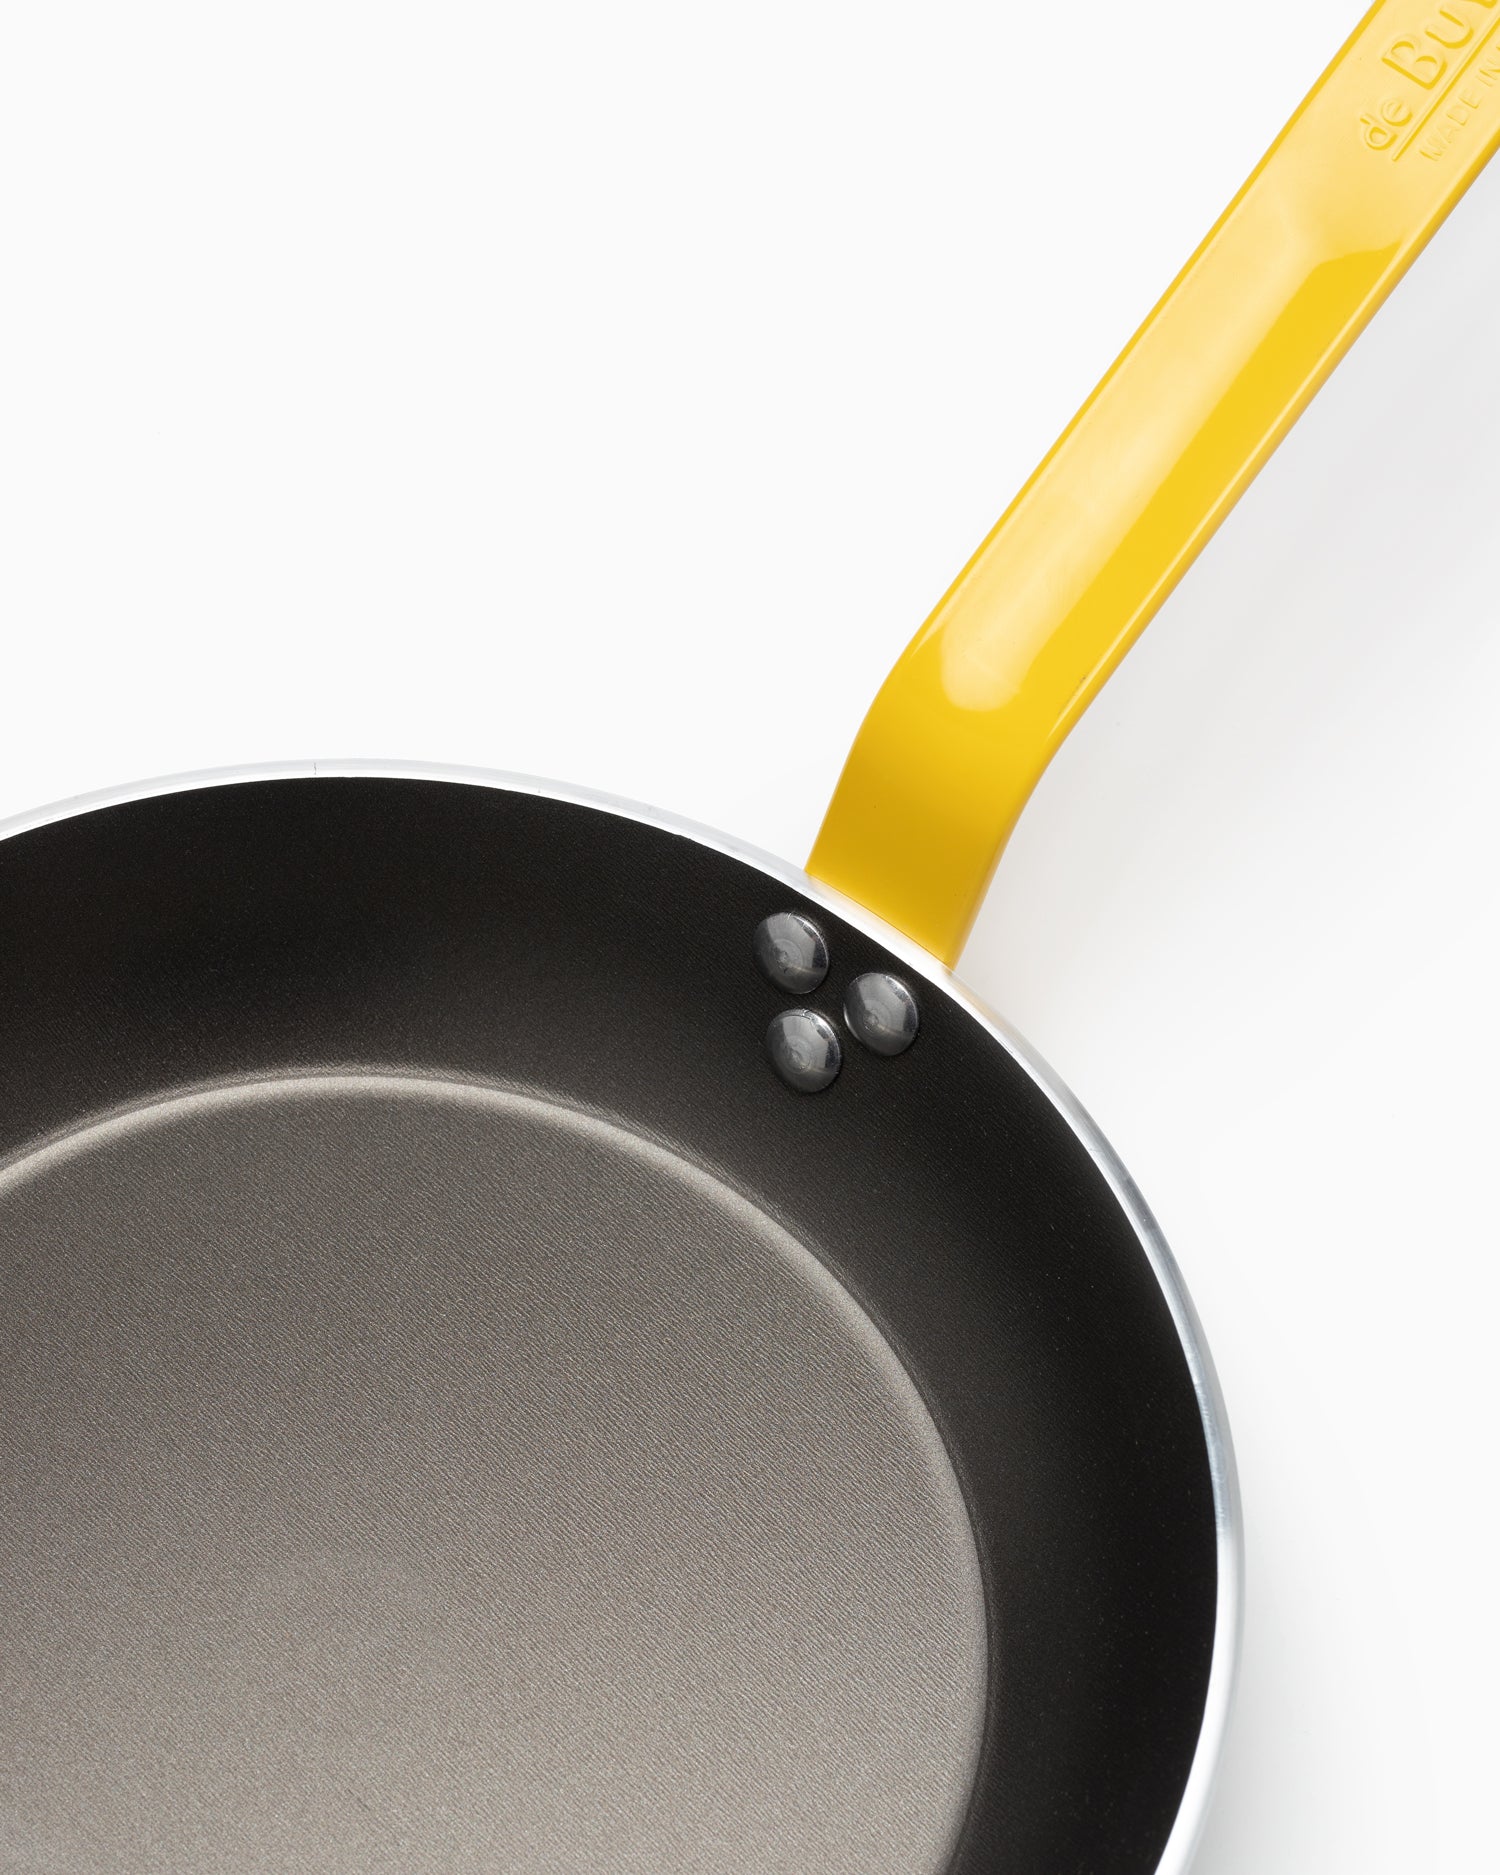 de Buyer 28cm CHOC 5 Frying Pan with Yellow Handle